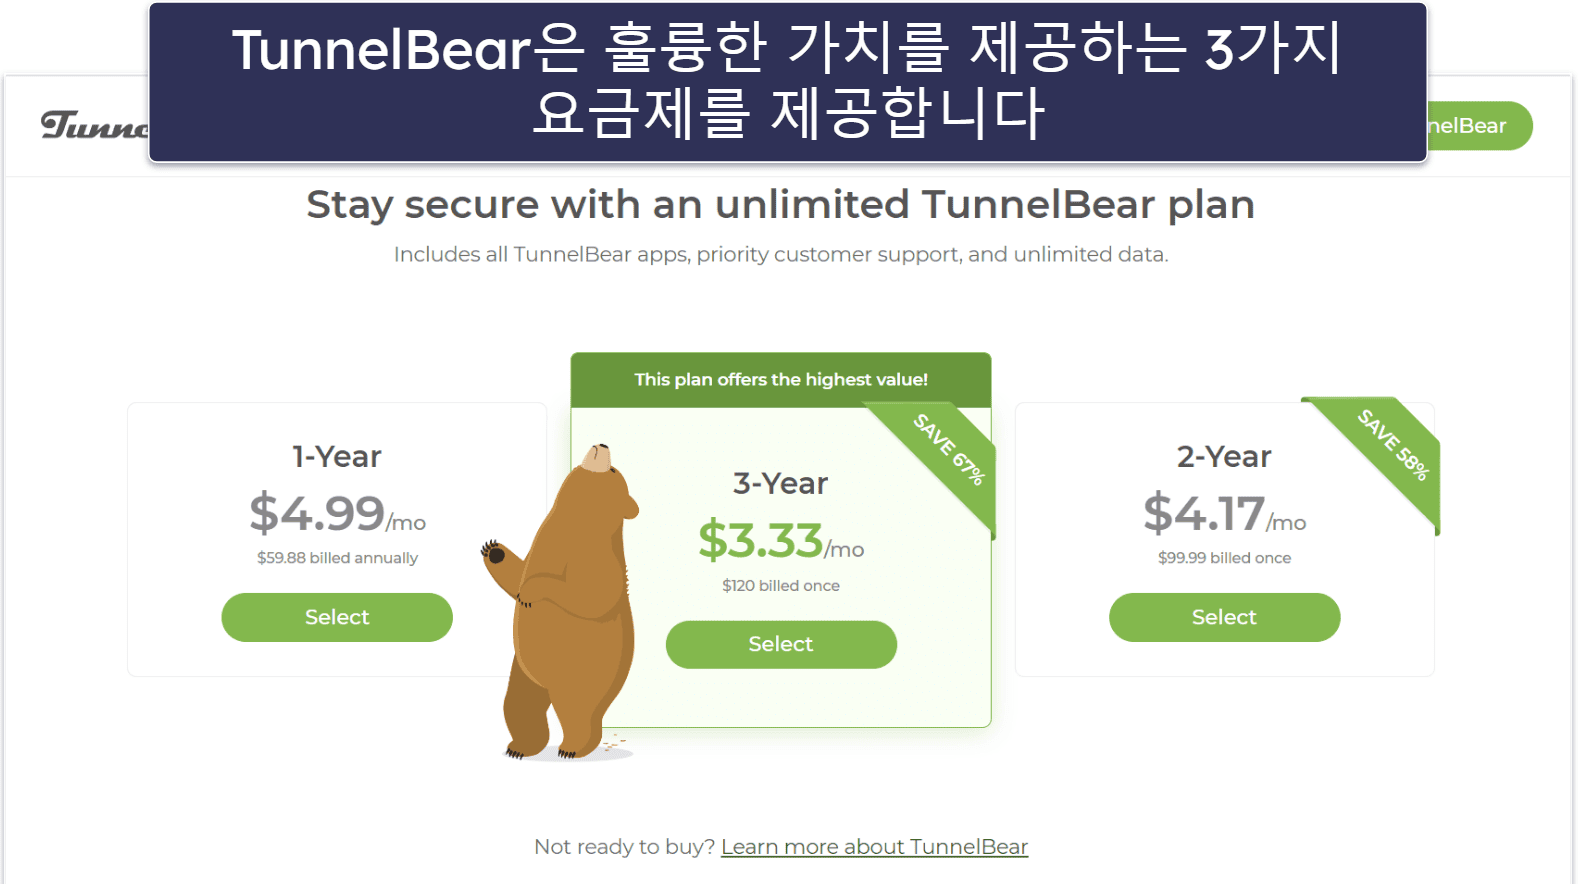 8. TunnelBear: 쉽고 재밌는 서비스